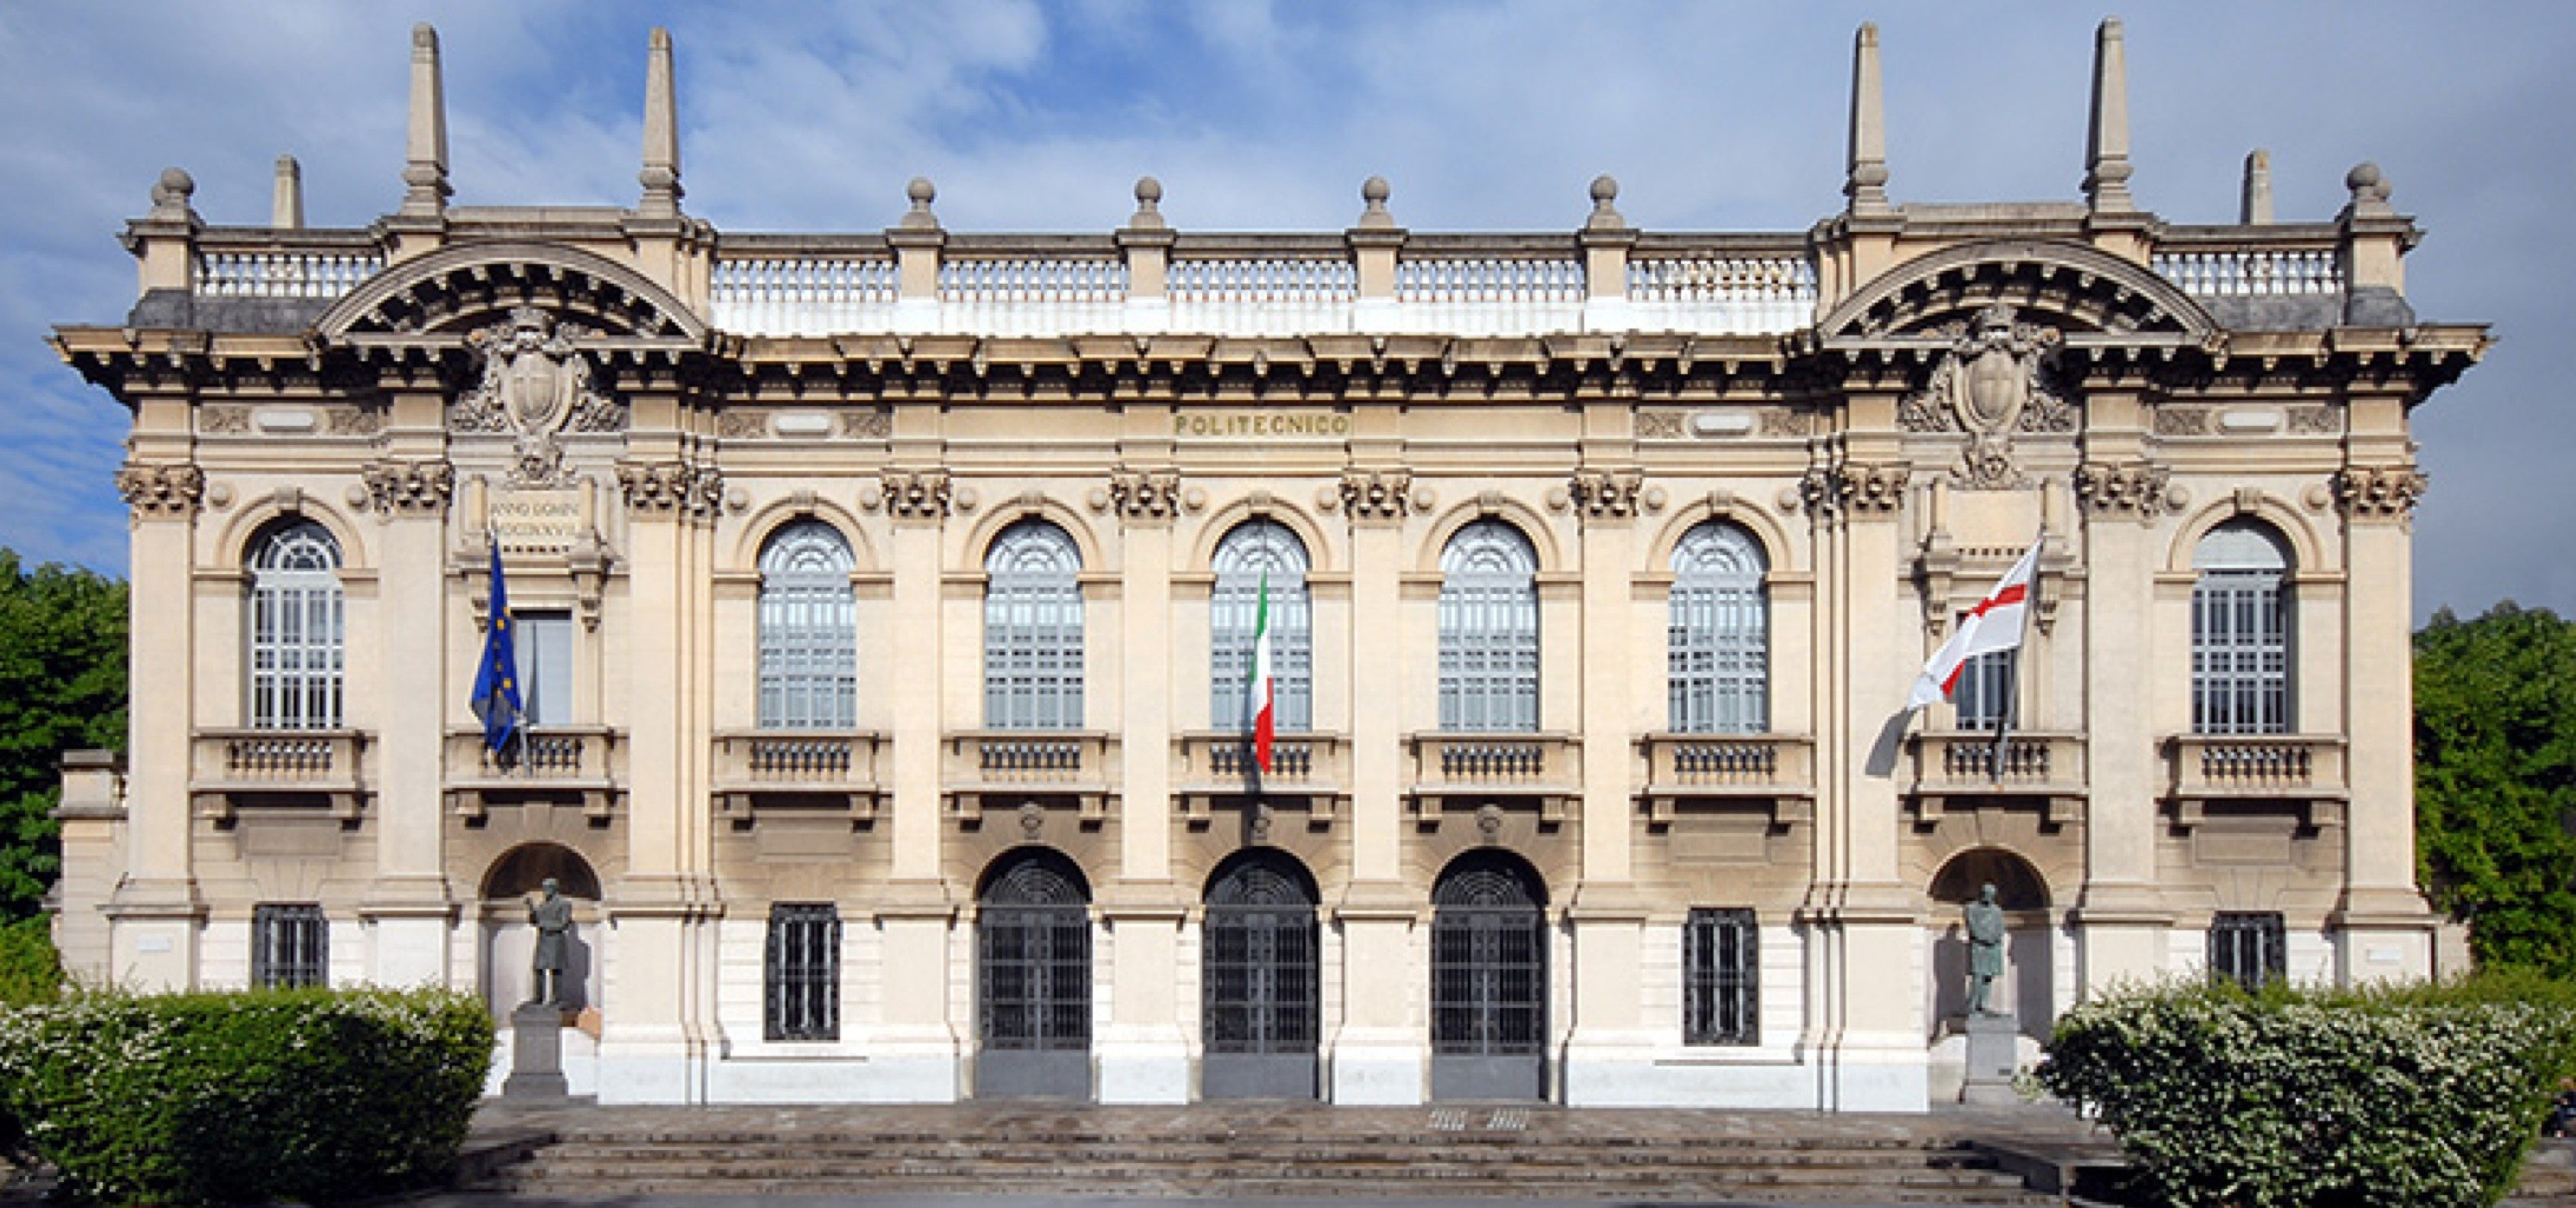 Il Politecnico di Milano é la migliore Università italiana